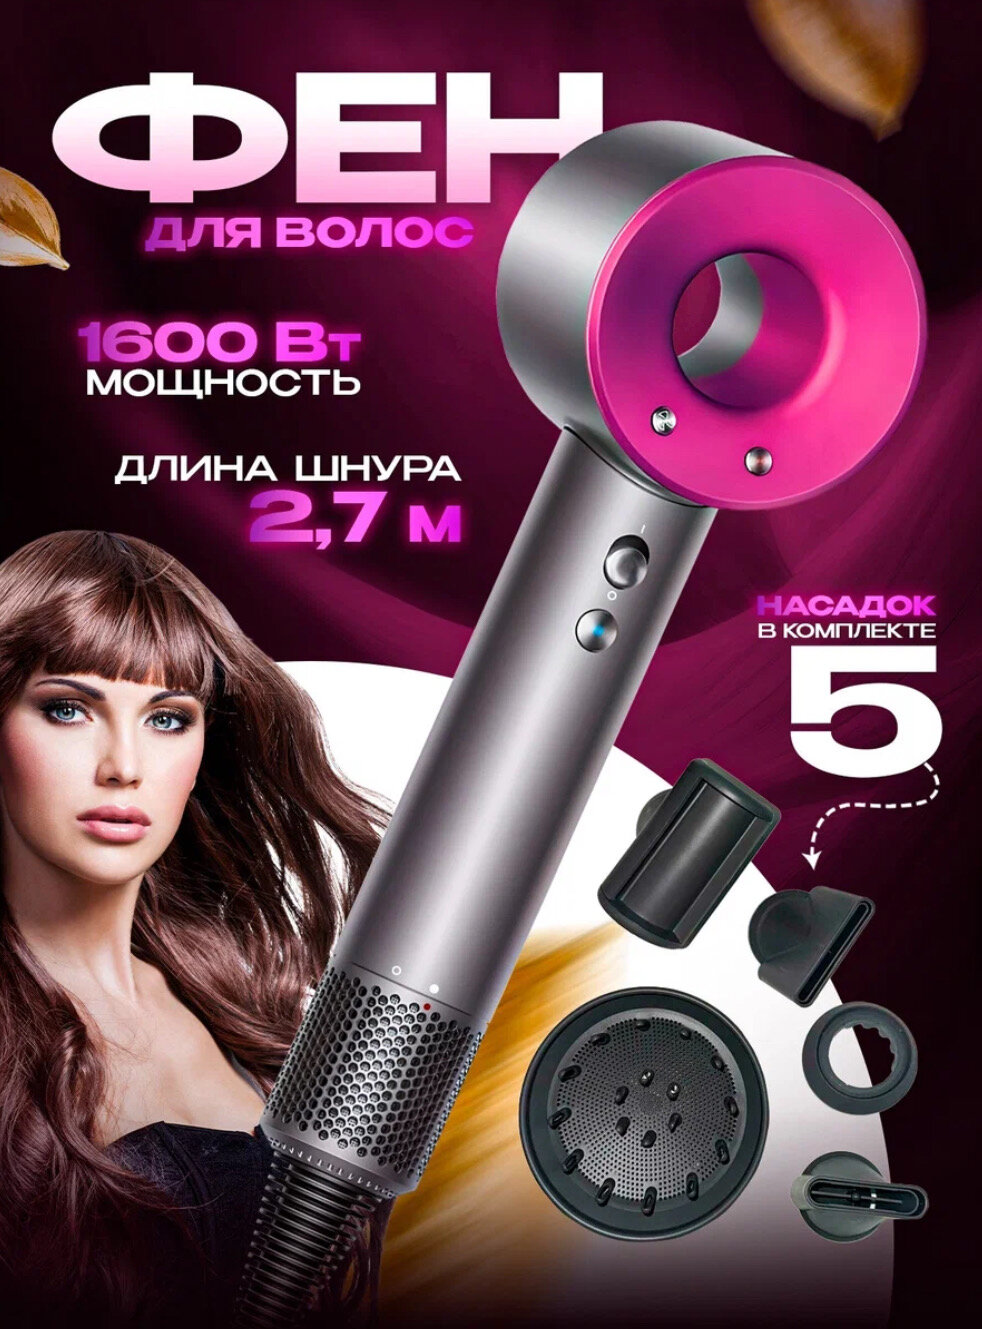 Профессиональный фен для волос Фен Leafless hair dryеr 1600 Вт, 3 режима, 5 магнитных насадок, ионизация воздуха, цвет фуксия